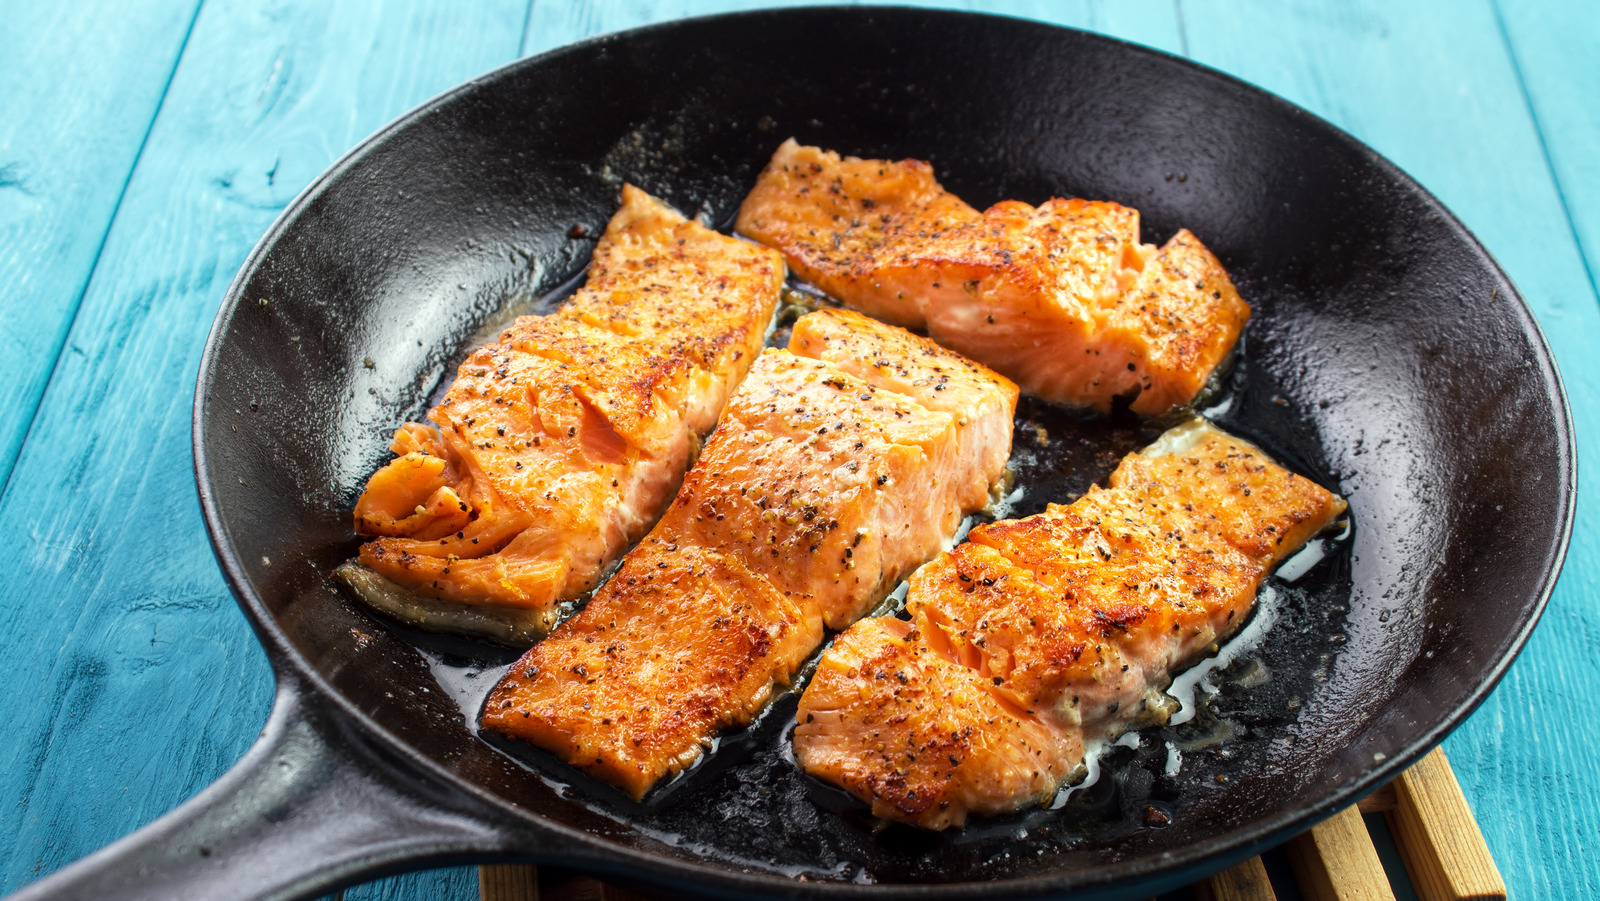 الزبدة أم الزيت: أيهما أفضل لسمك السلمون؟